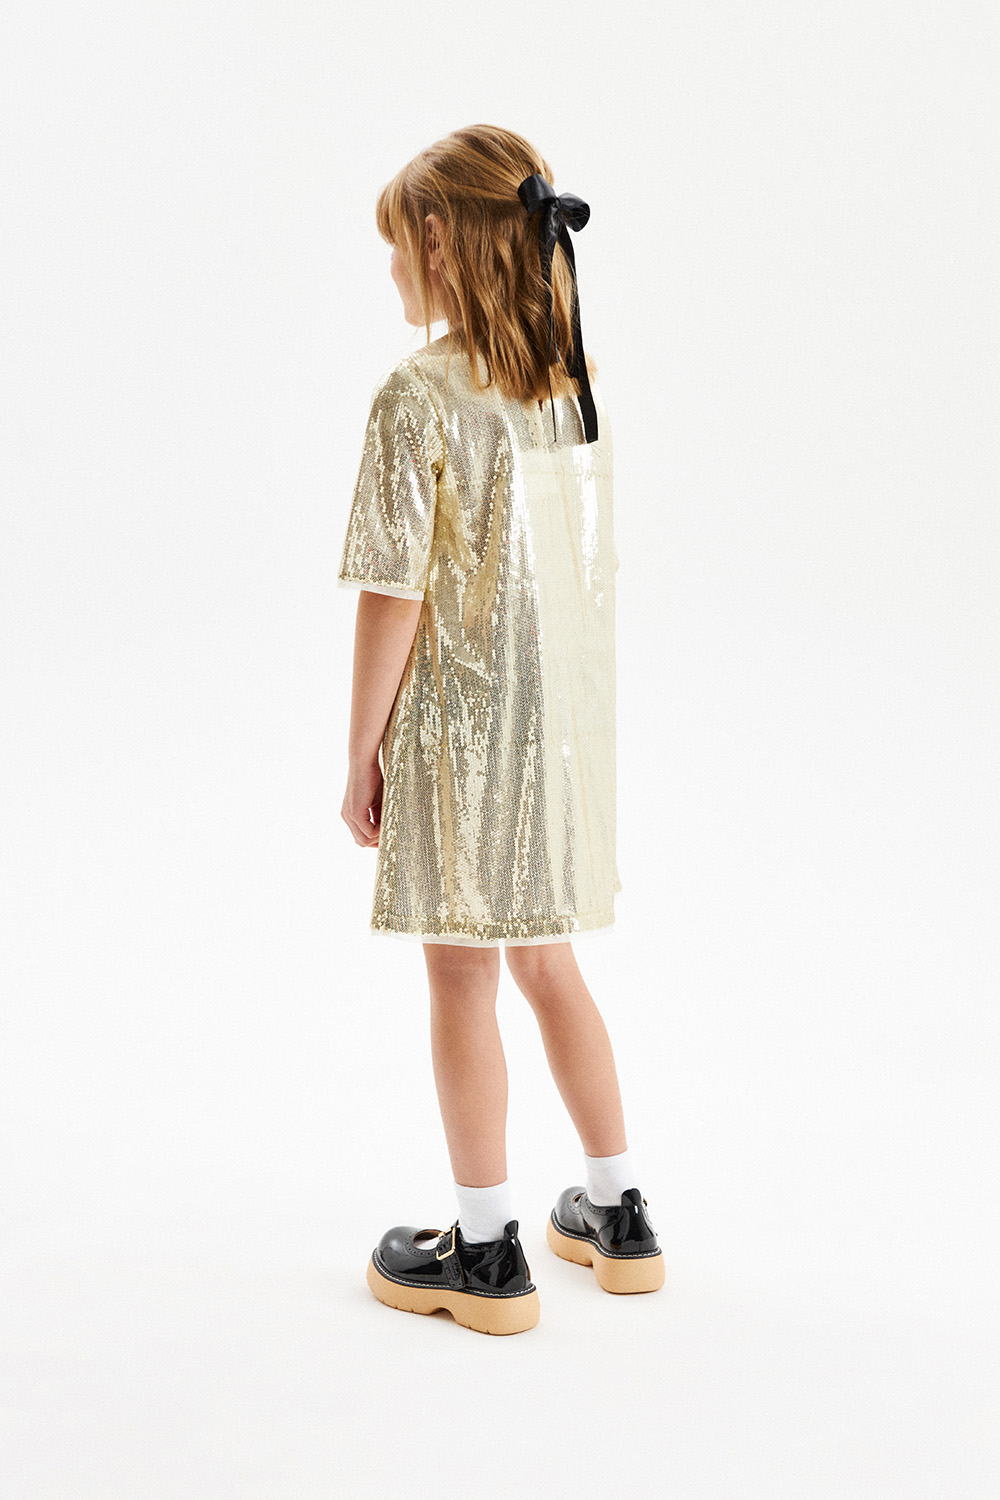 Золотое платье с пайетками (SNFWG-329-23604-900) Silver spoon